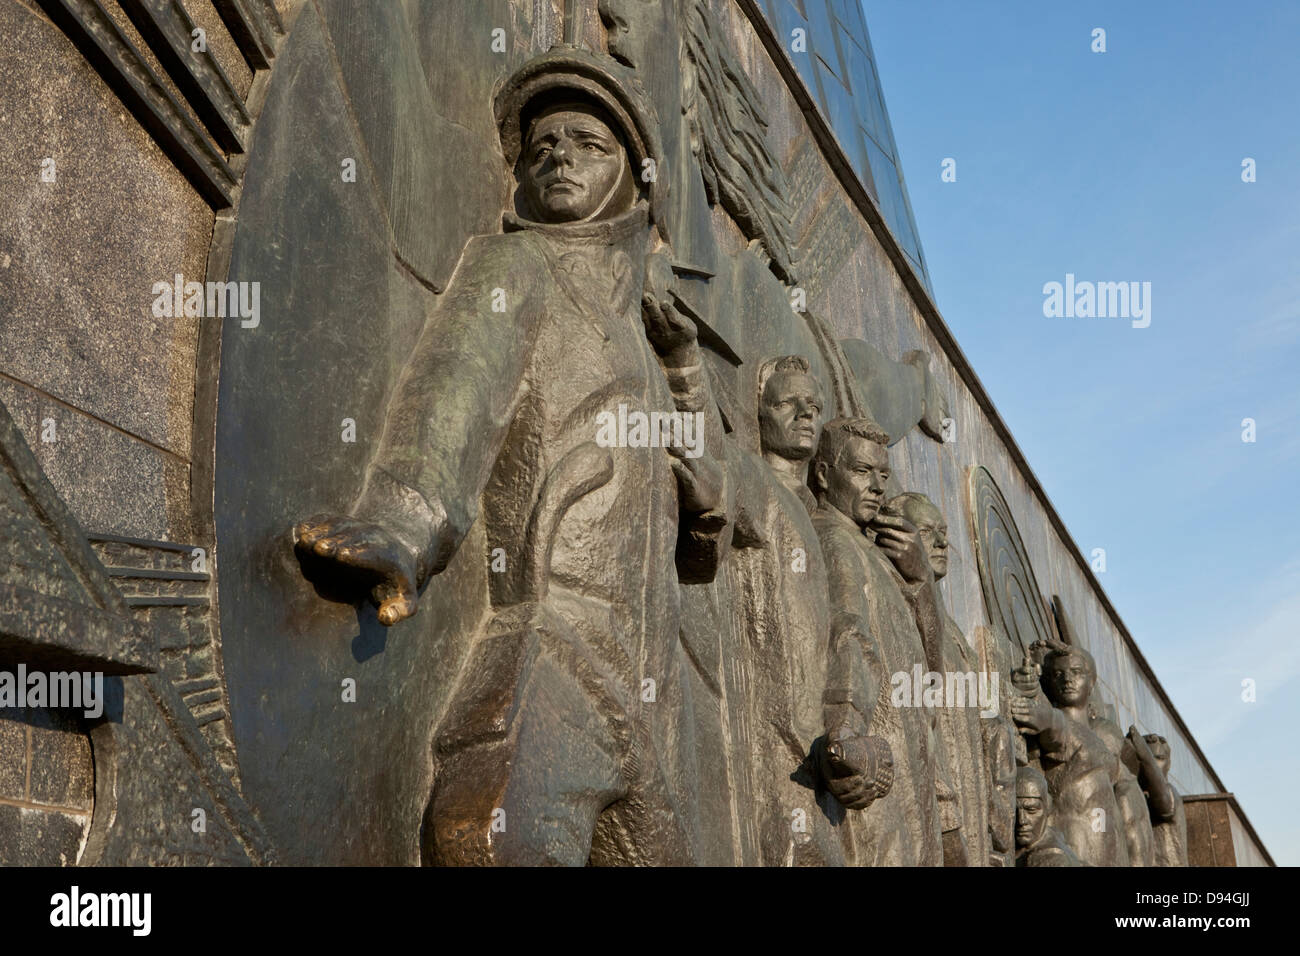 Monument des conquérants de l'espace au musée mémorial de l'astronautique, Moscou, Russie Banque D'Images